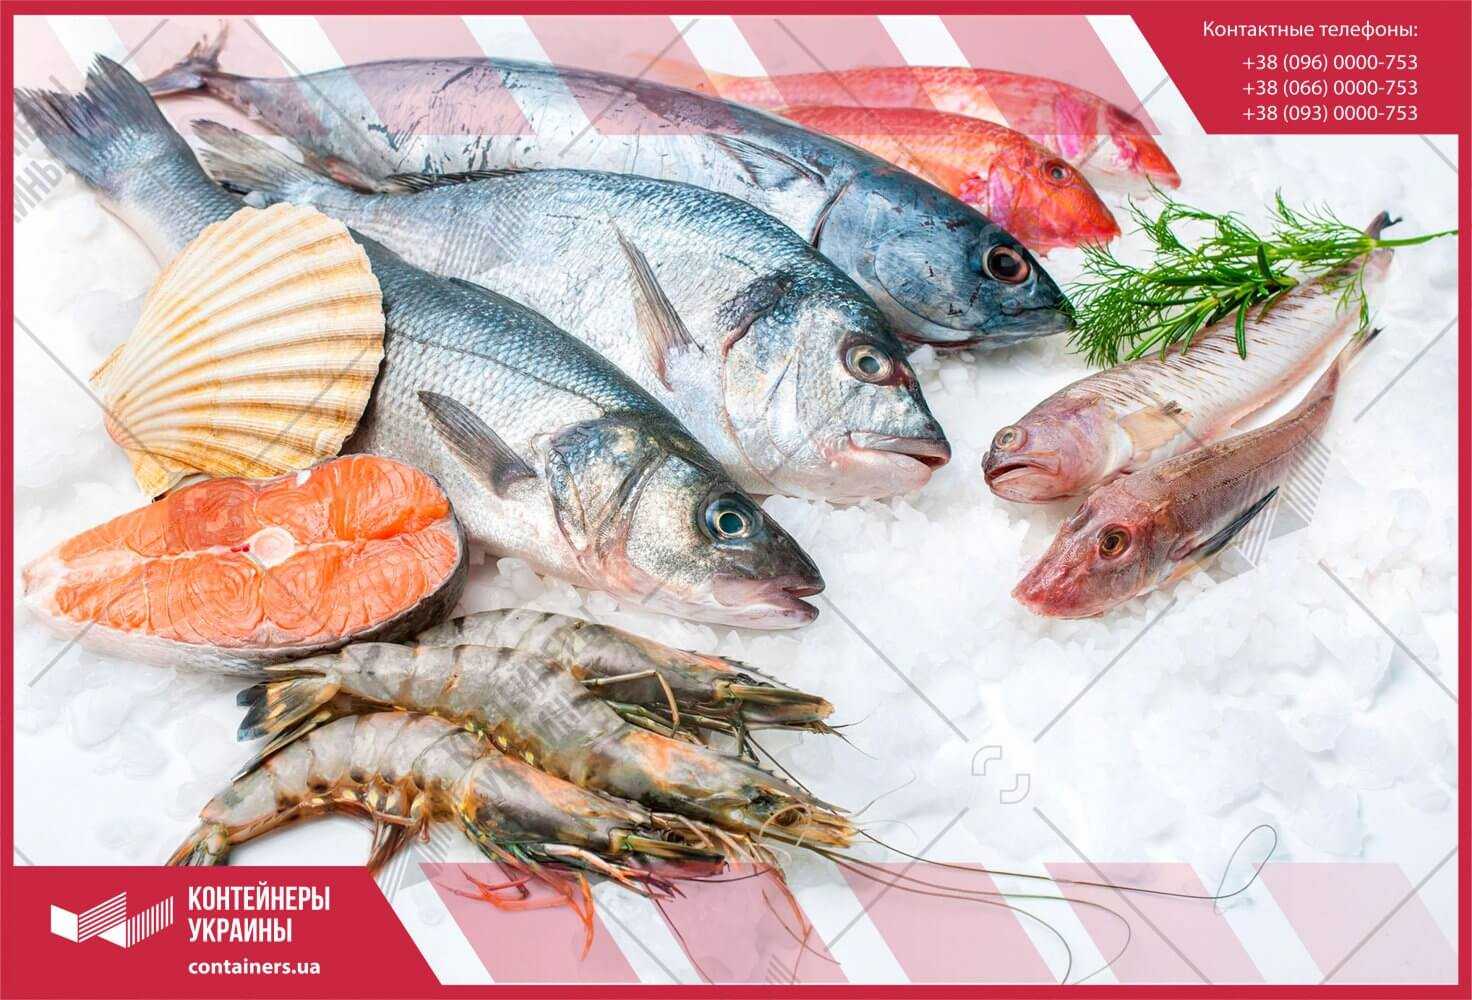 Условия перевозки живой рыбы: основные правила транспортировки